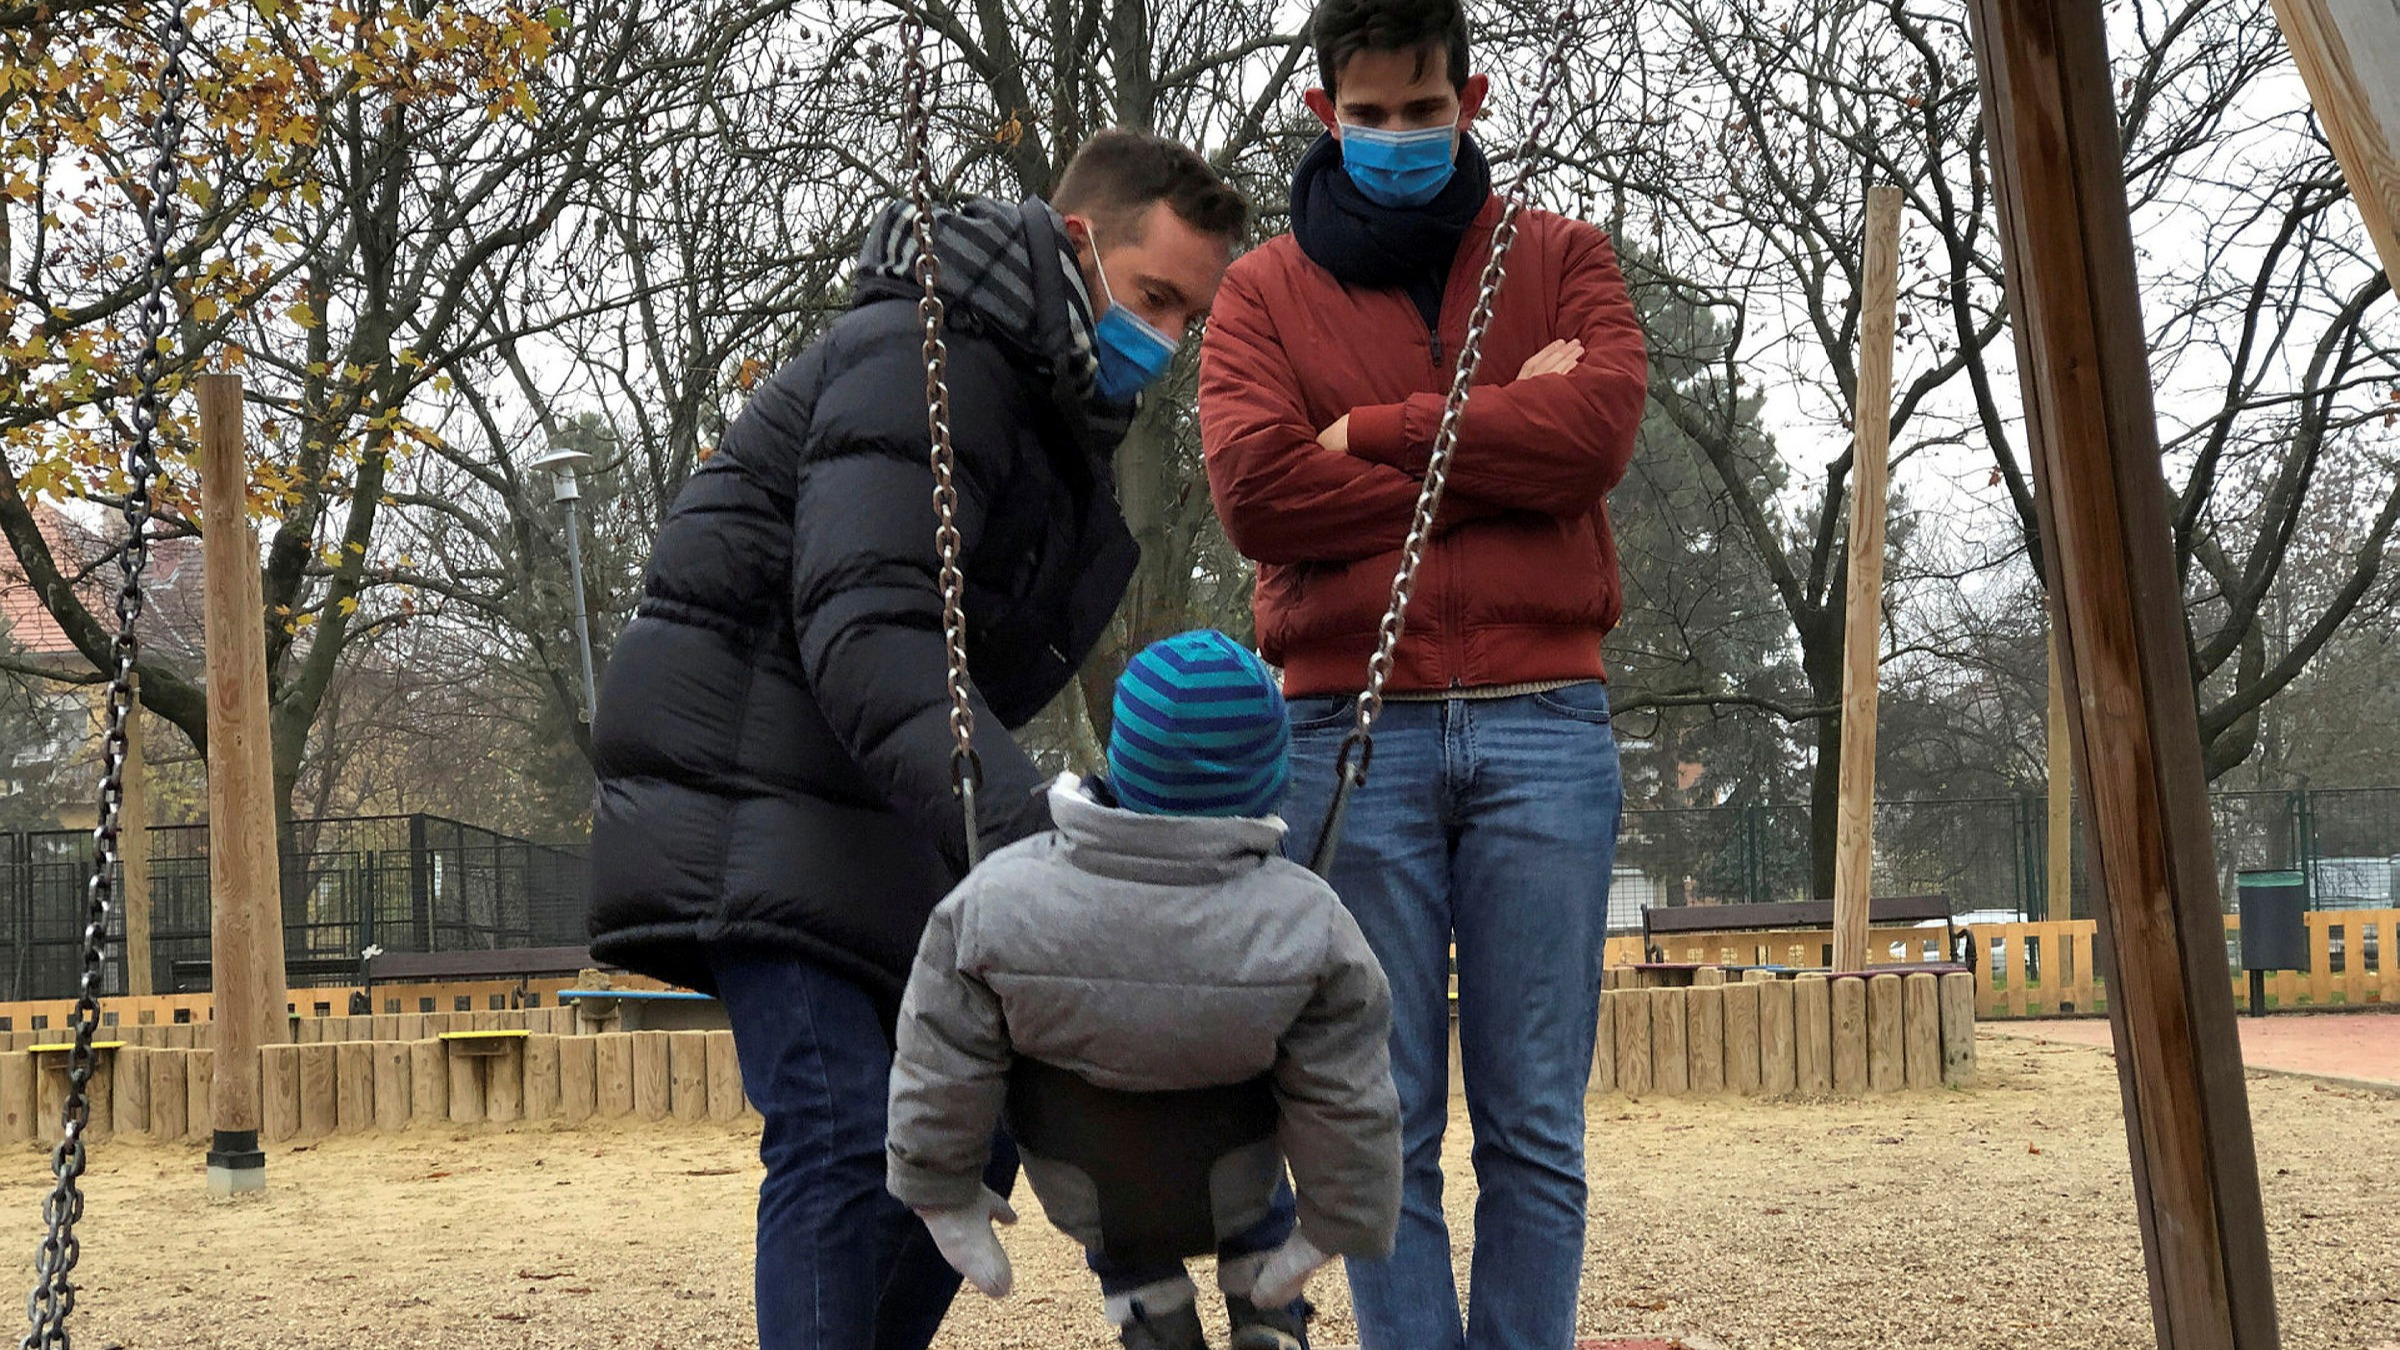 Η Ουγγαρία του Ορμπάν  προωθεί Νομοθεσία που απαγορεύει την ομοφυλοφιλία